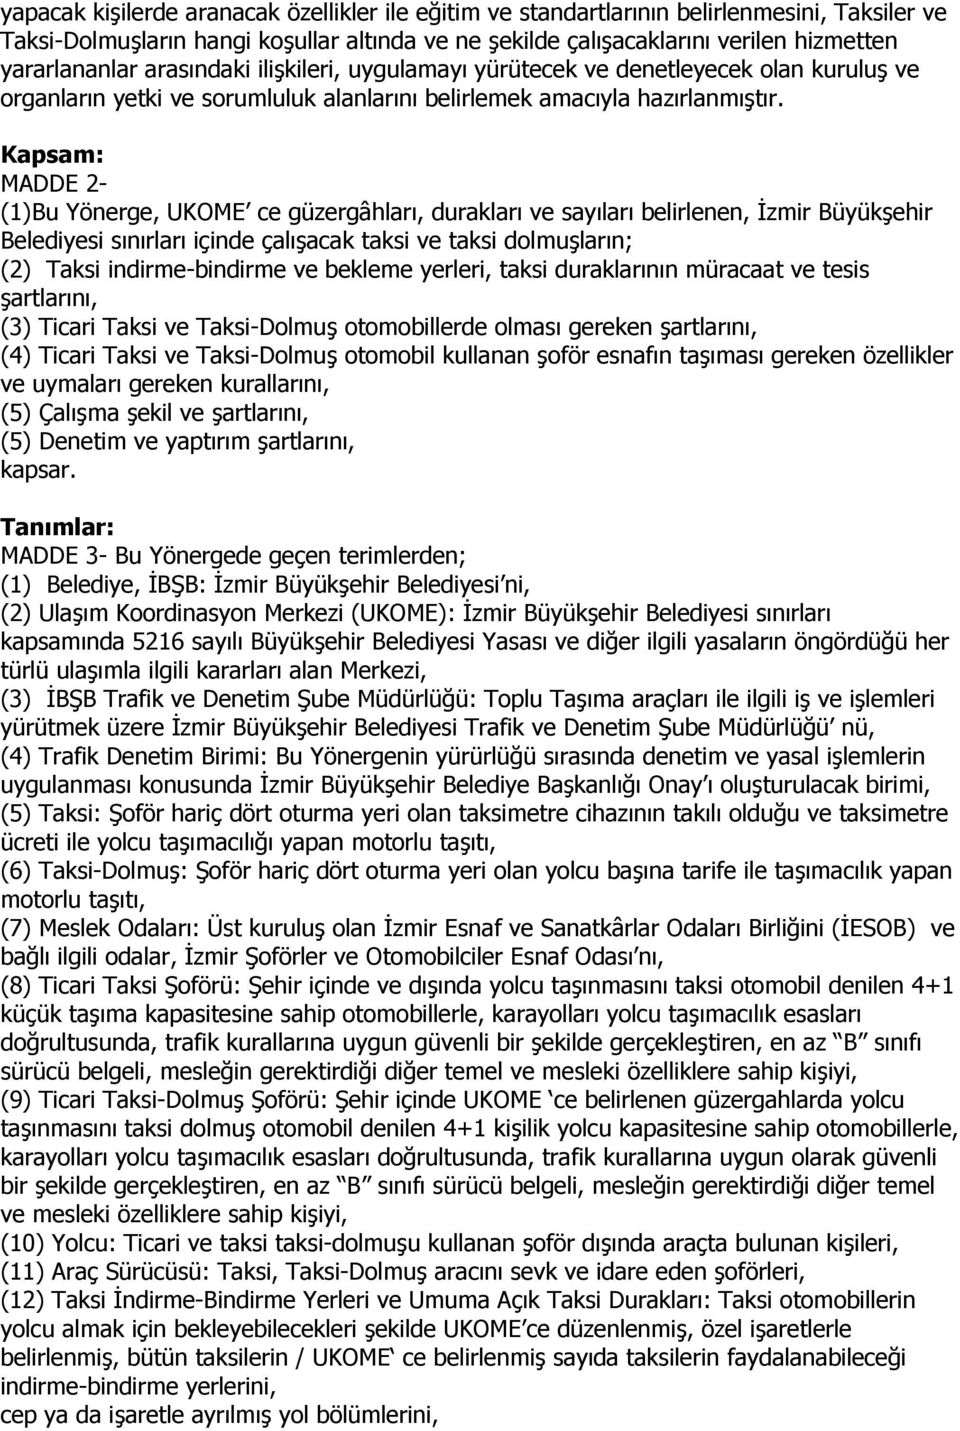 Kapsam: MADDE 2- (1)Bu Yönerge, UKOME ce güzergâhları, durakları ve sayıları belirlenen, İzmir Büyükşehir Belediyesi sınırları içinde çalışacak taksi ve taksi dolmuşların; (2) Taksi indirme-bindirme